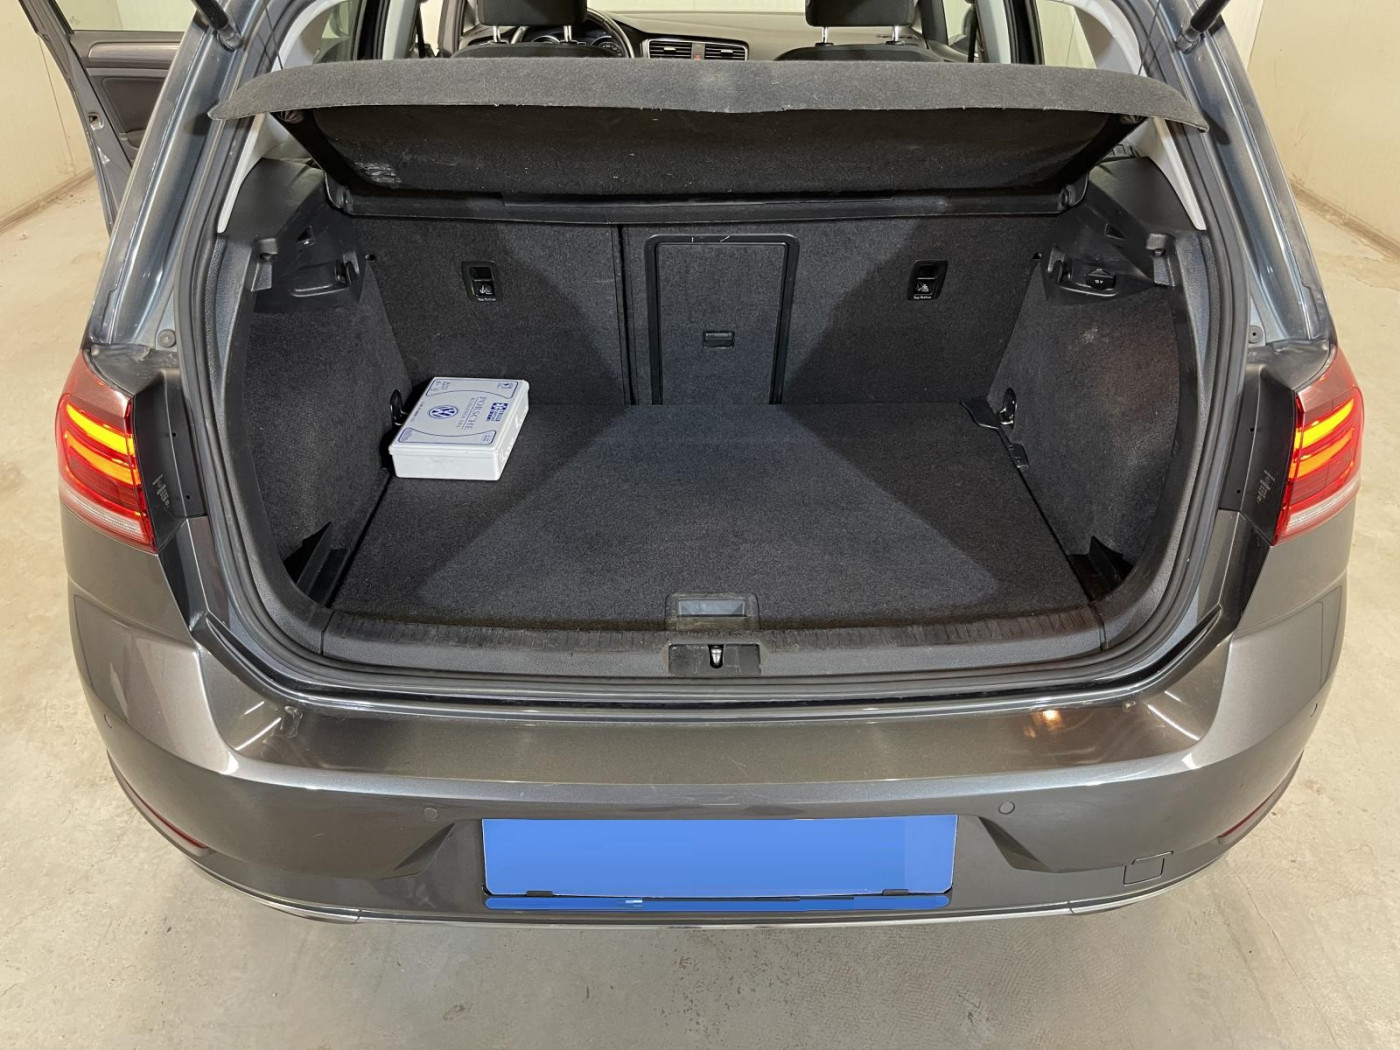 Volkswagen Golf  116 CP   - 16990 €,   142600 km,  anul 2018,  culoare gri 